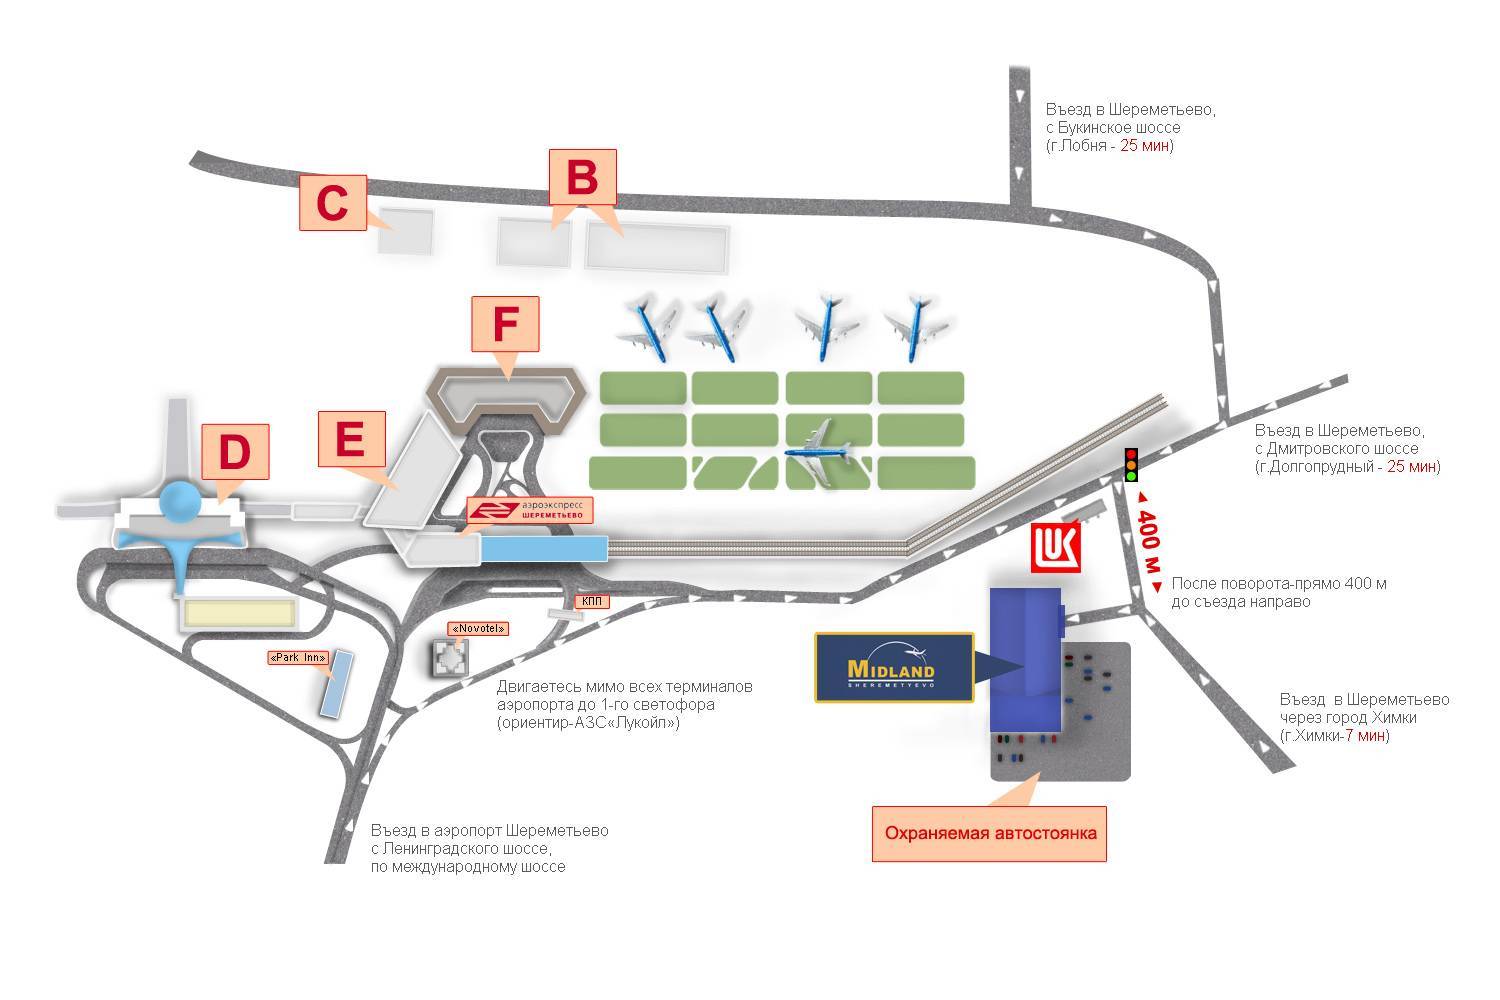 Схема аэропорта шереметьево: все терминалы на карте